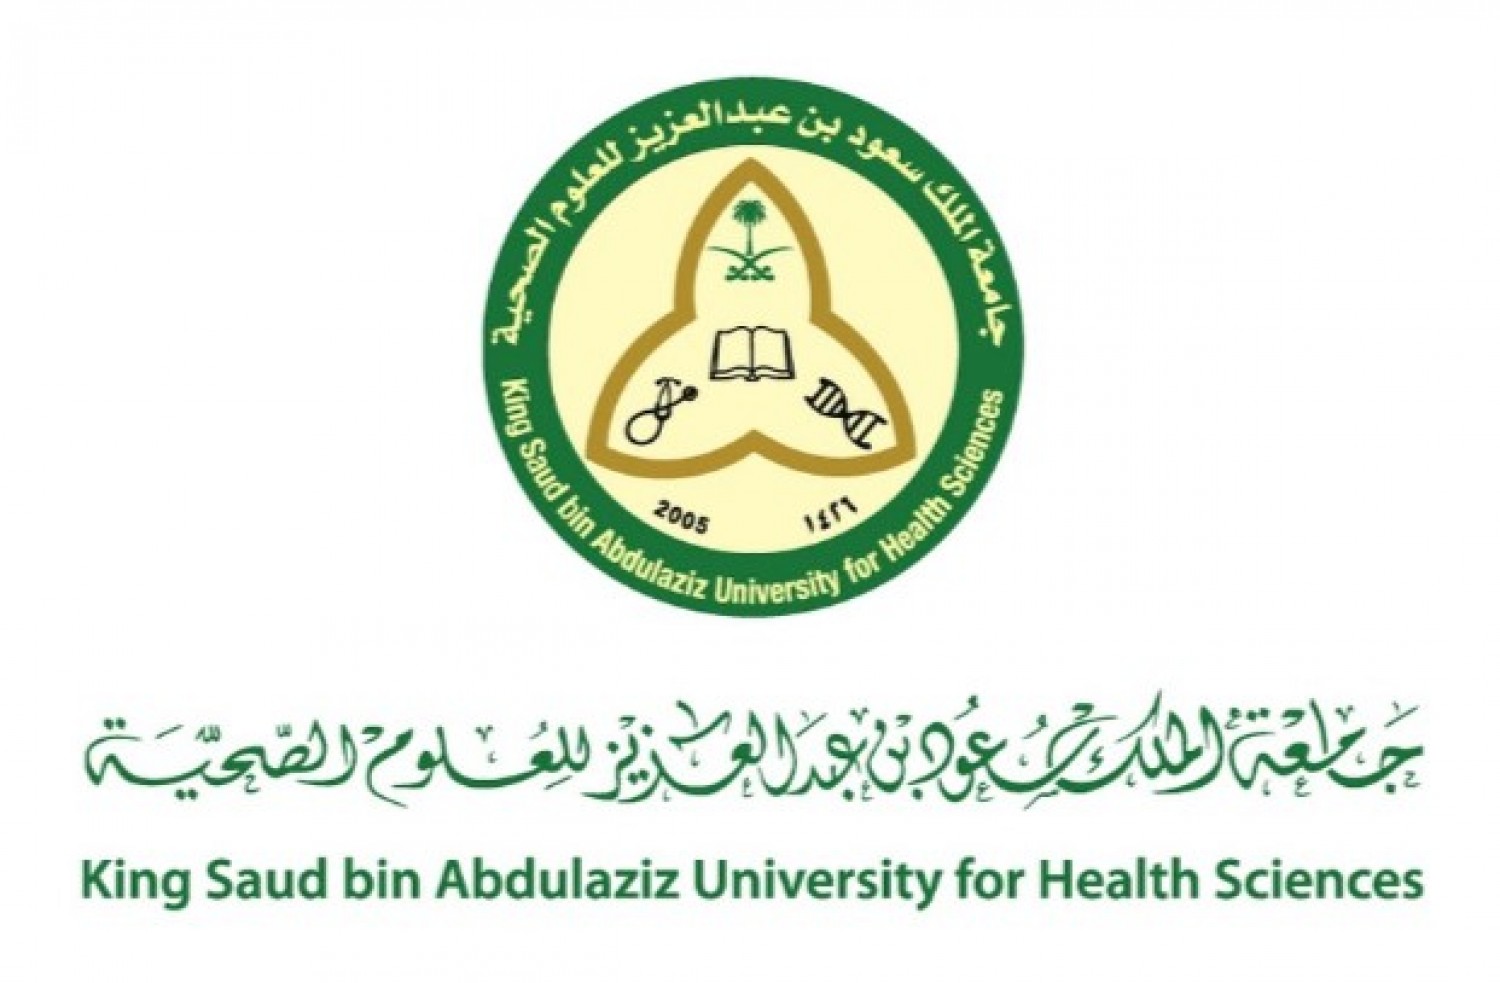 وظائف شاغرة بجامعة الملك سعود بن عبدالعزيز للعلوم الصحية